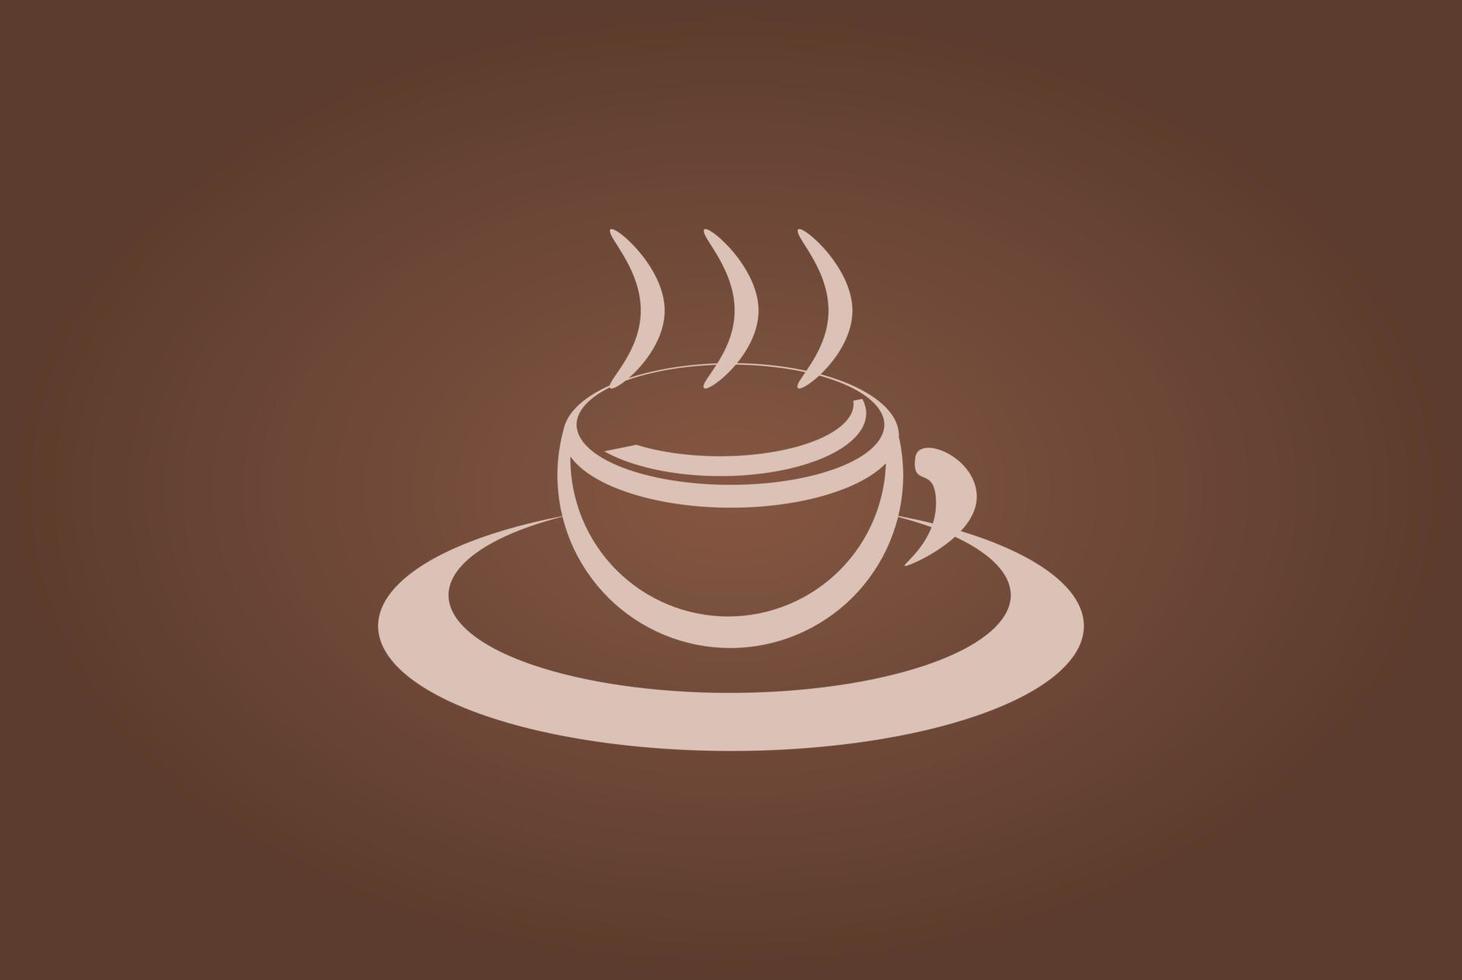 eenvoudige vectorachtergrond met koffiethema. bruine achtergrond met een kopje koffie. een geschikte achtergrond voor presentatieactiviteiten, publicaties of activiteiten op social media. vector